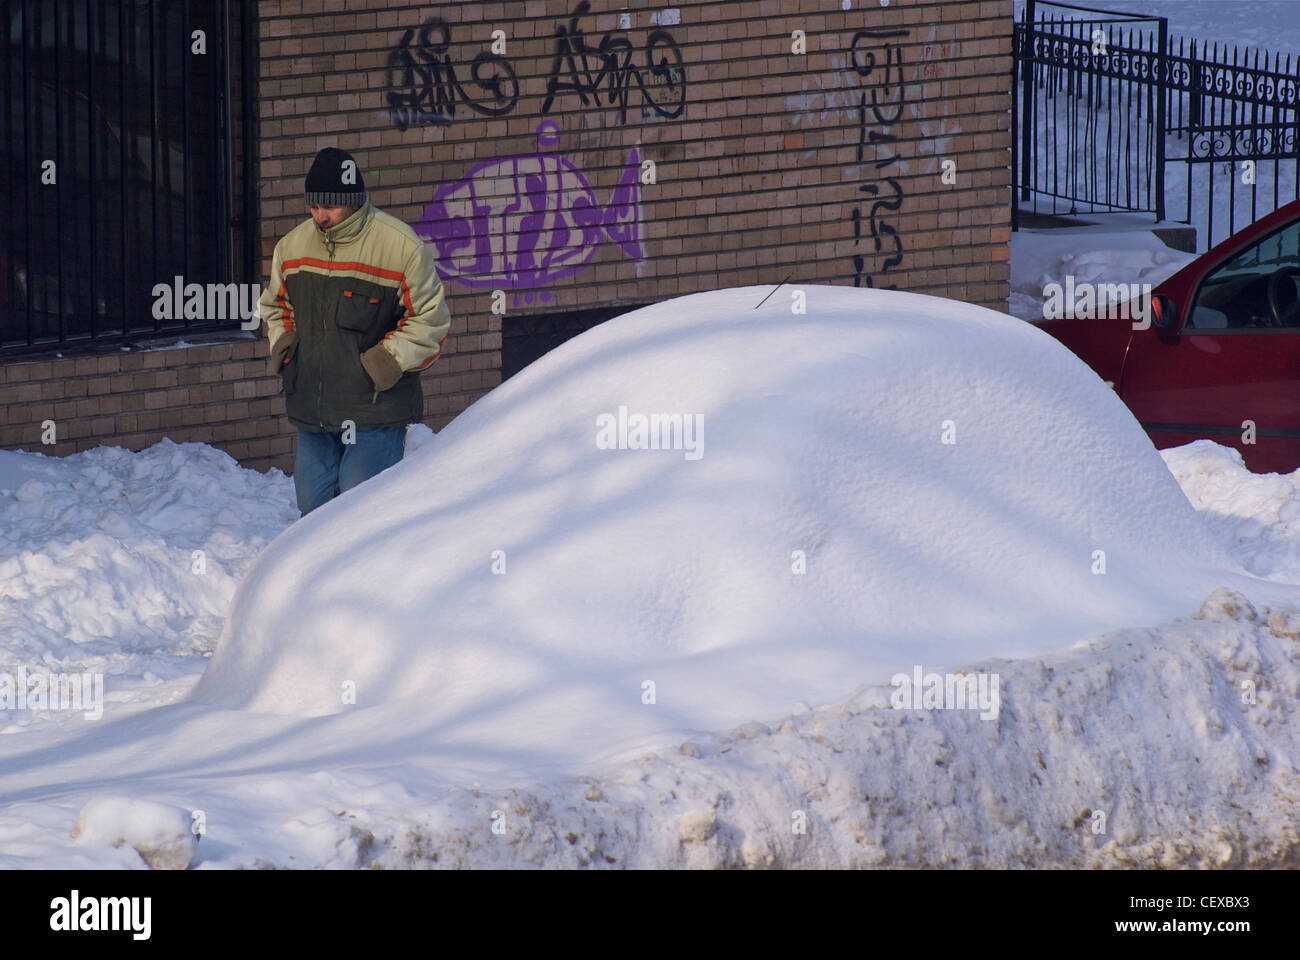 Frau zu Fuß vorbei an ein Auto komplett bedeckt in Schnee